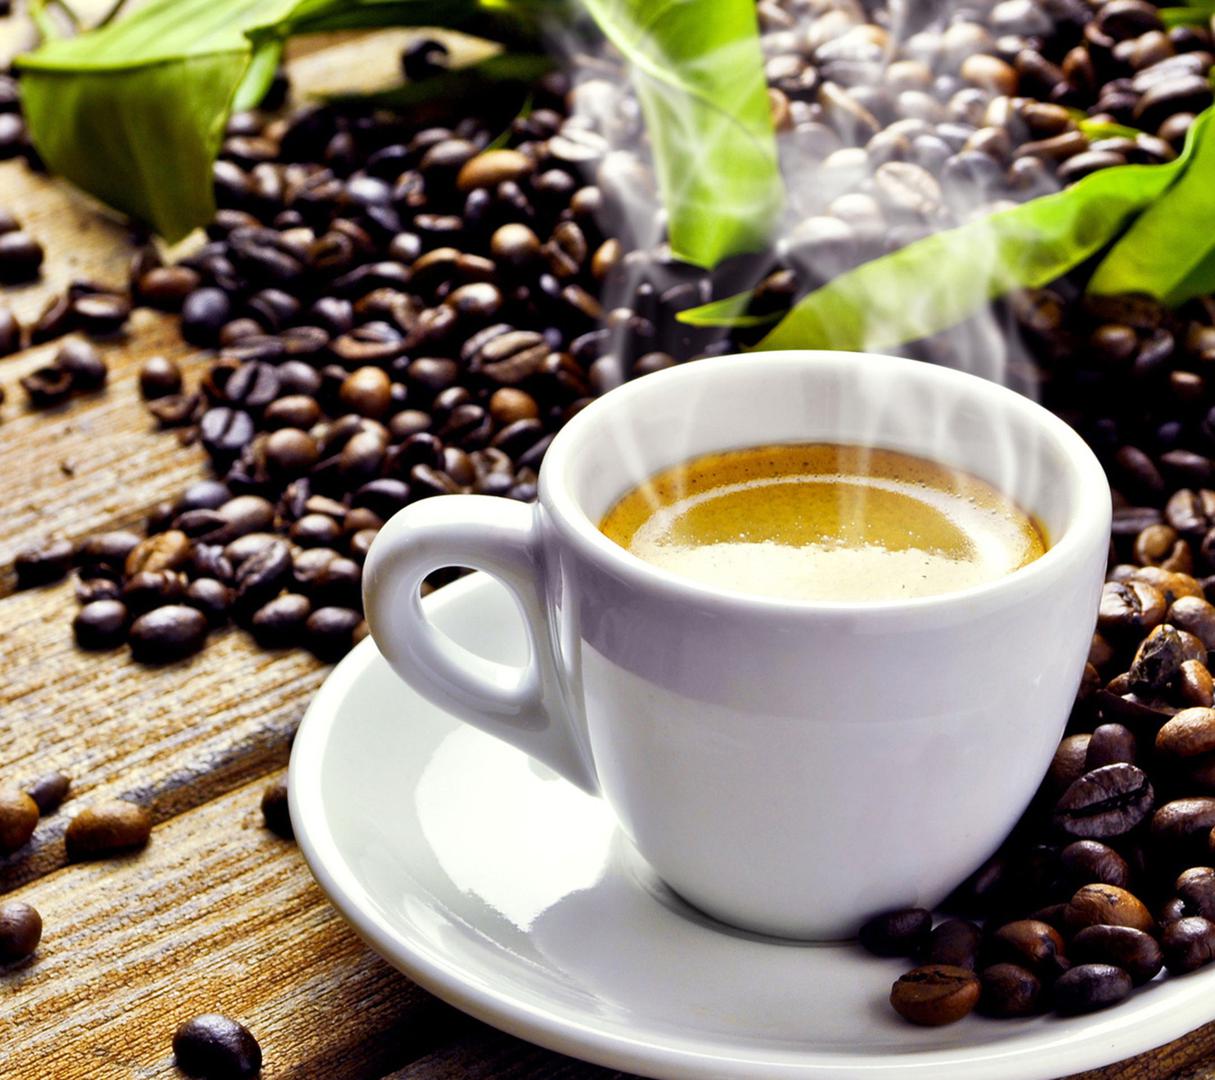 Rezultati istraživanja objavljeni su u časopisu American Journal of Medicine, a pokazali su da ispijanje tri ili više kofeinskih pića na dan, poput kave, čaja, gaziranih pića, može biti uzrok migrene u istom danu ili sutradan nakon ispijanja veće količine kofeinskih pića, navodi se. 